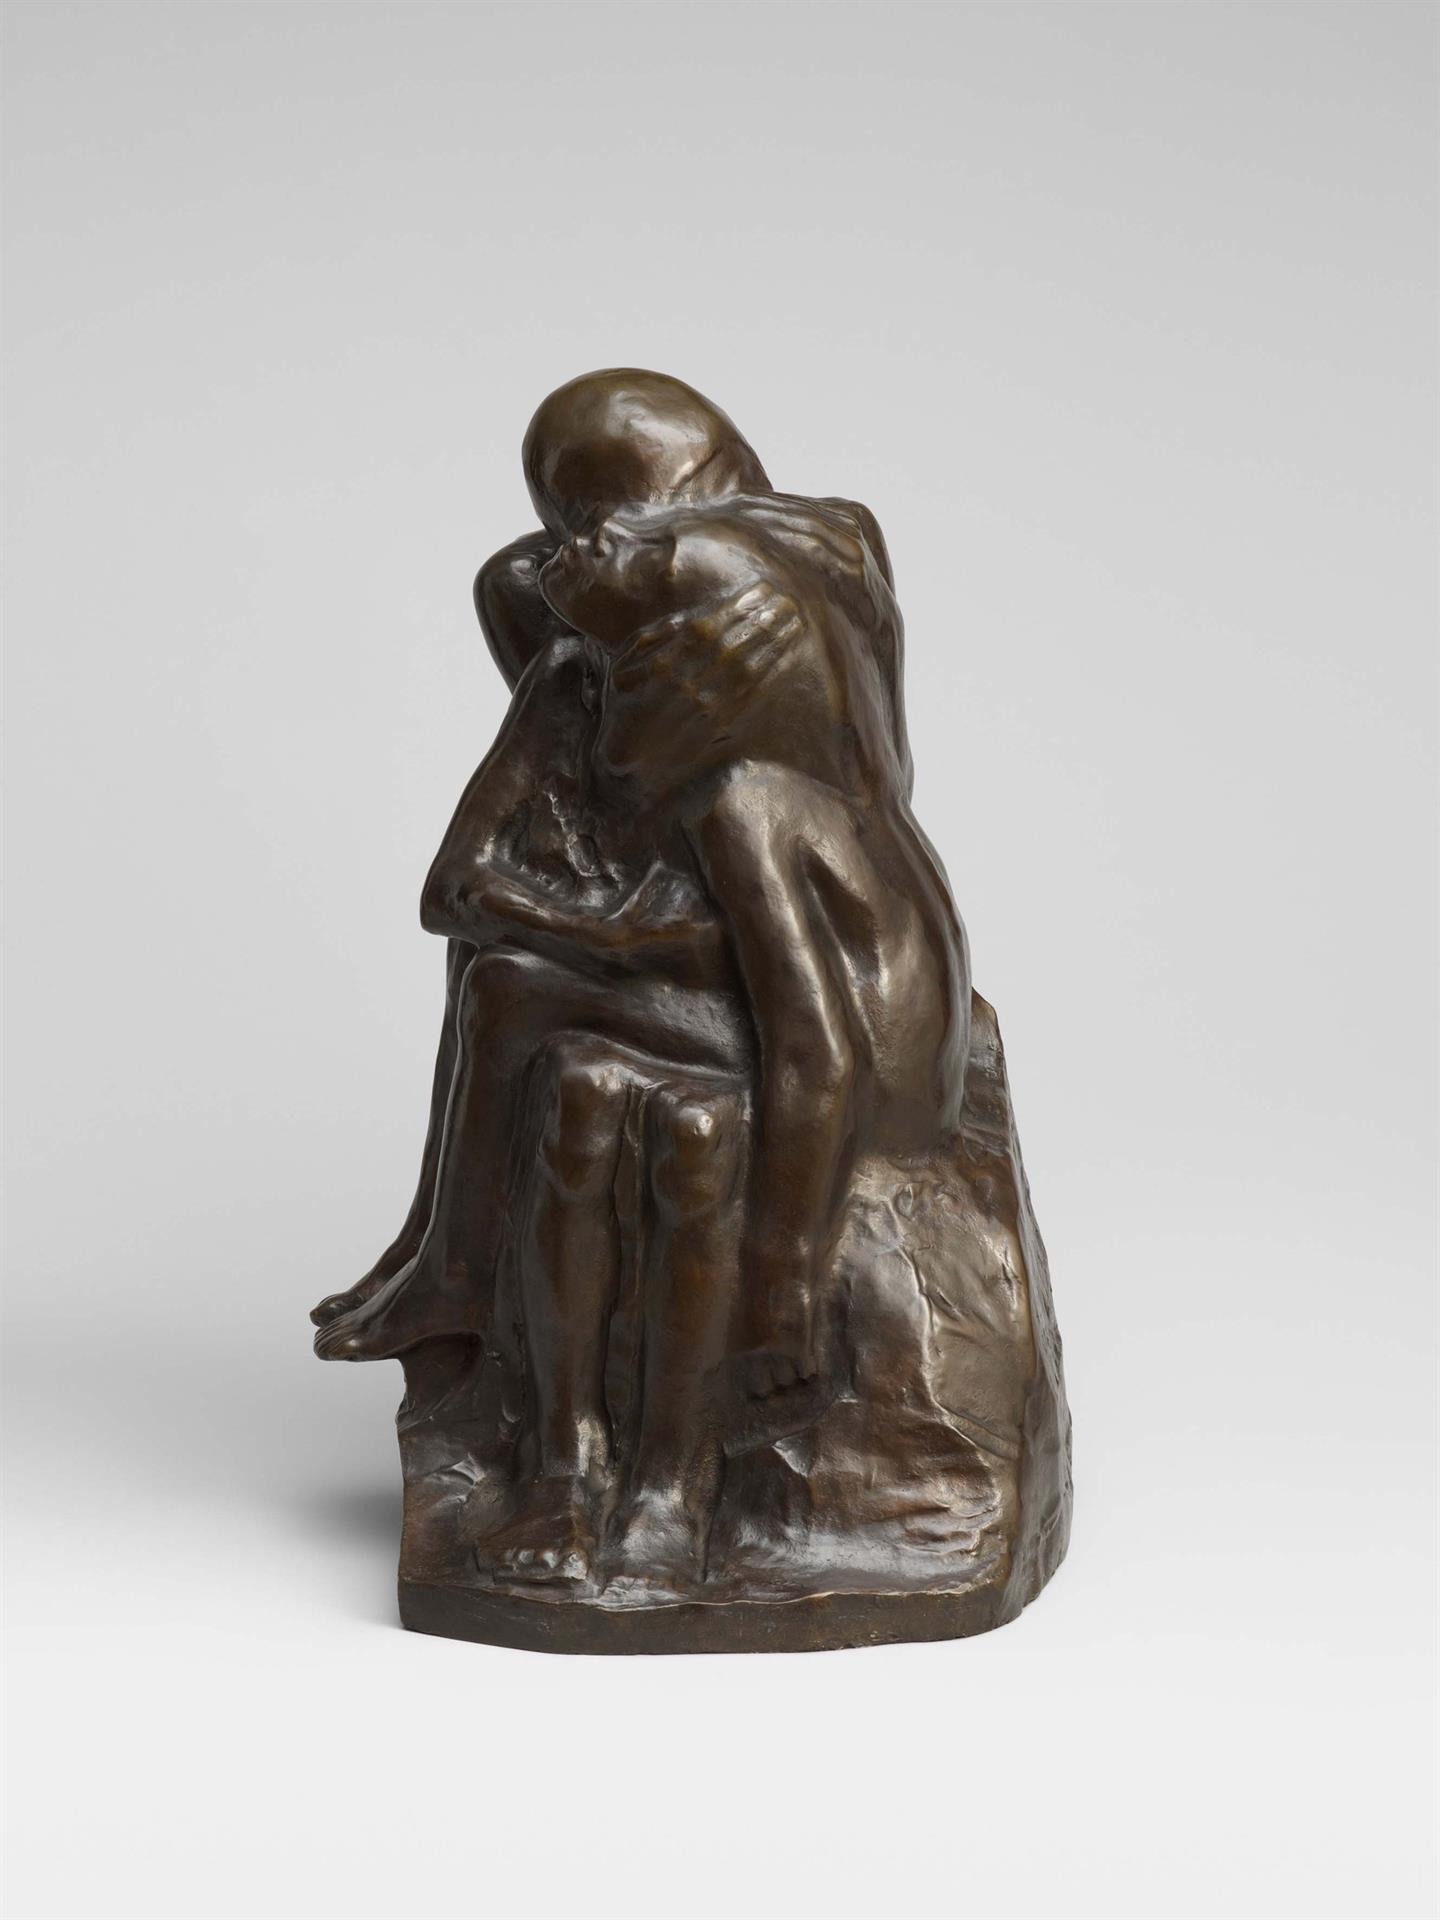 Käthe Kollwitz, Pair of Lovers, 1913-1915, bronze, Seeler 13.II.B.9., Cologne Kollwitz Collection © Käthe Kollwitz Museum Köln